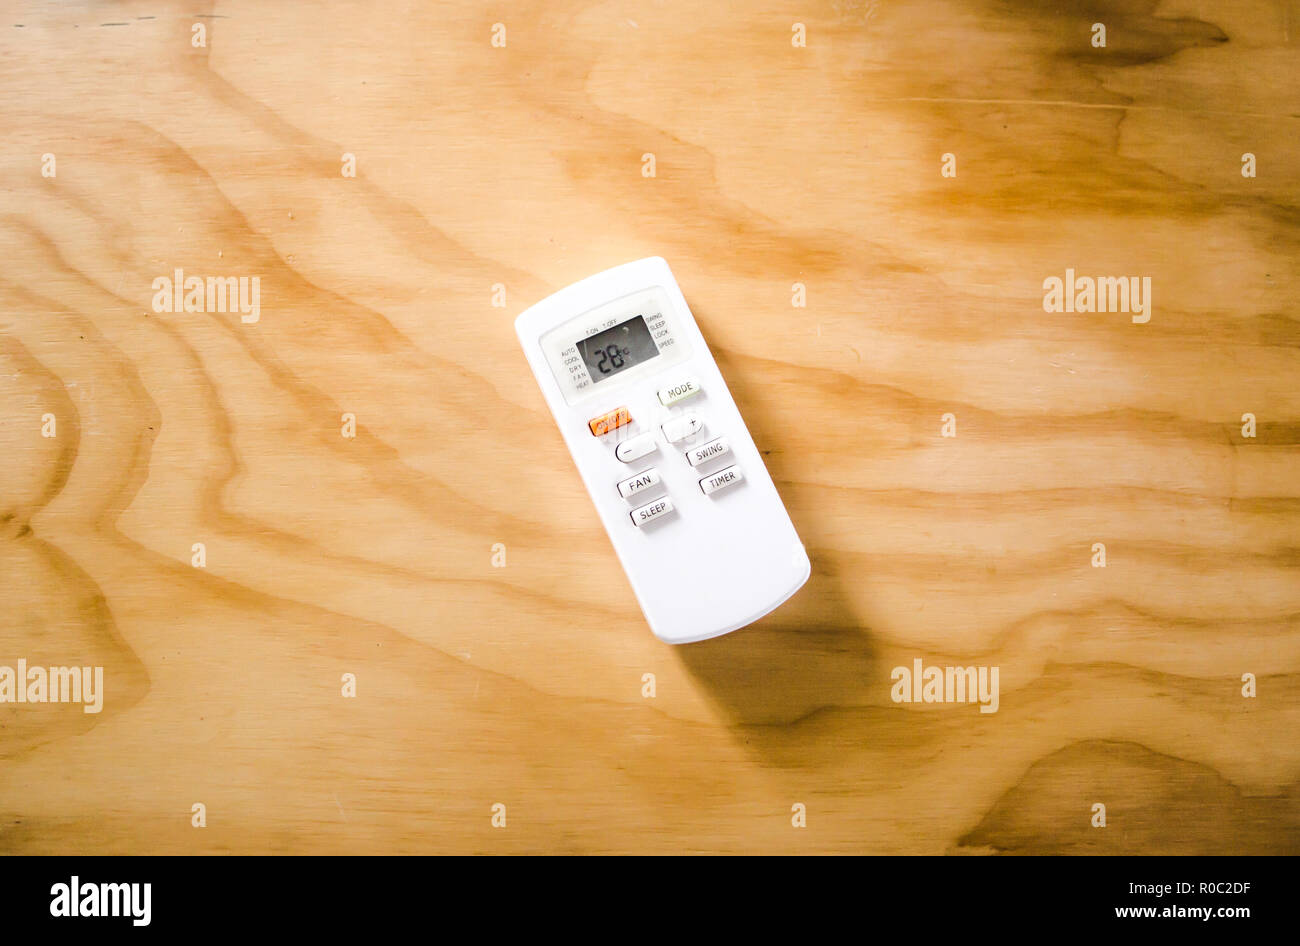 Office de télécommande pour température ambiante / unité d'air conditionné sur un bureau en bois Banque D'Images